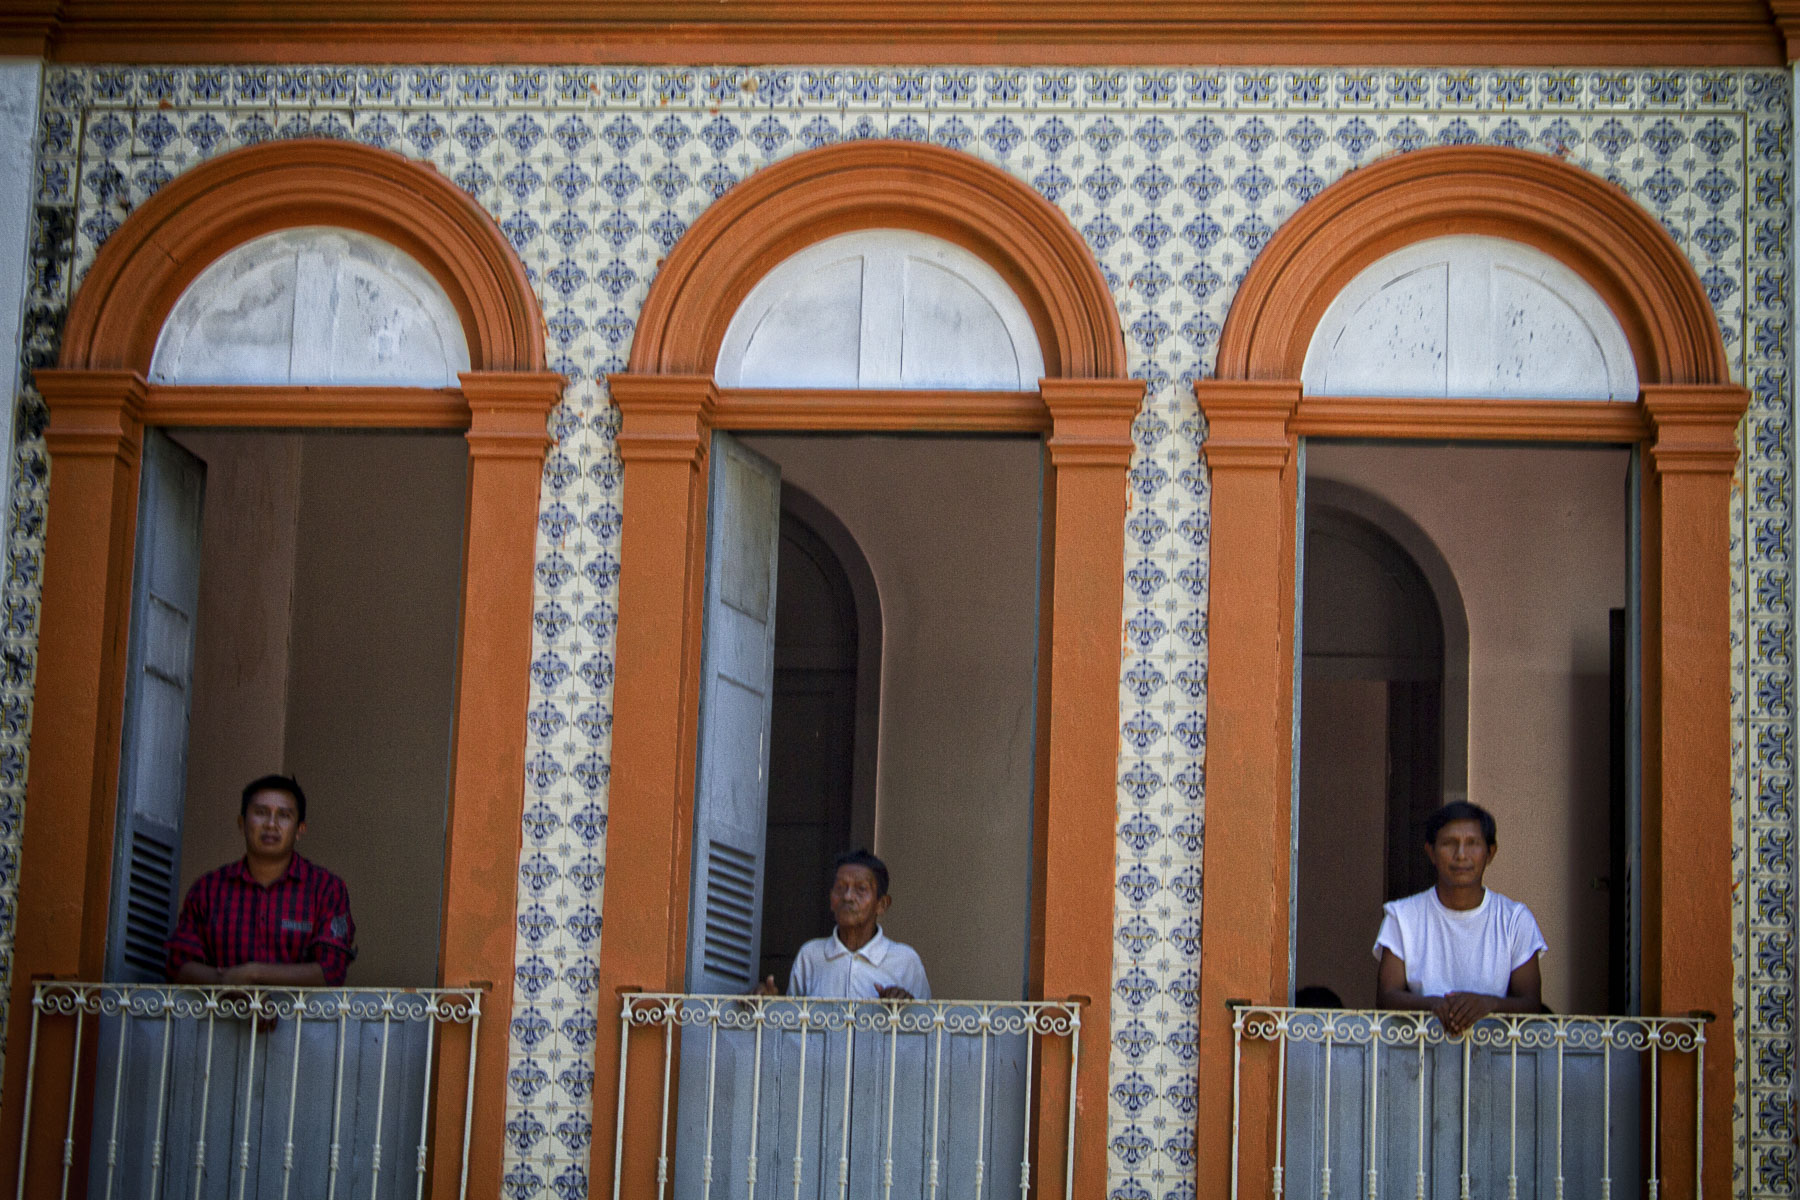 Centro de Medicina Indígena funciona em um casarão centenário no Marco Zero de Manaus: maioria de pacientes não indígena (Foto: Alberto César Araújo/Amazônia Real)